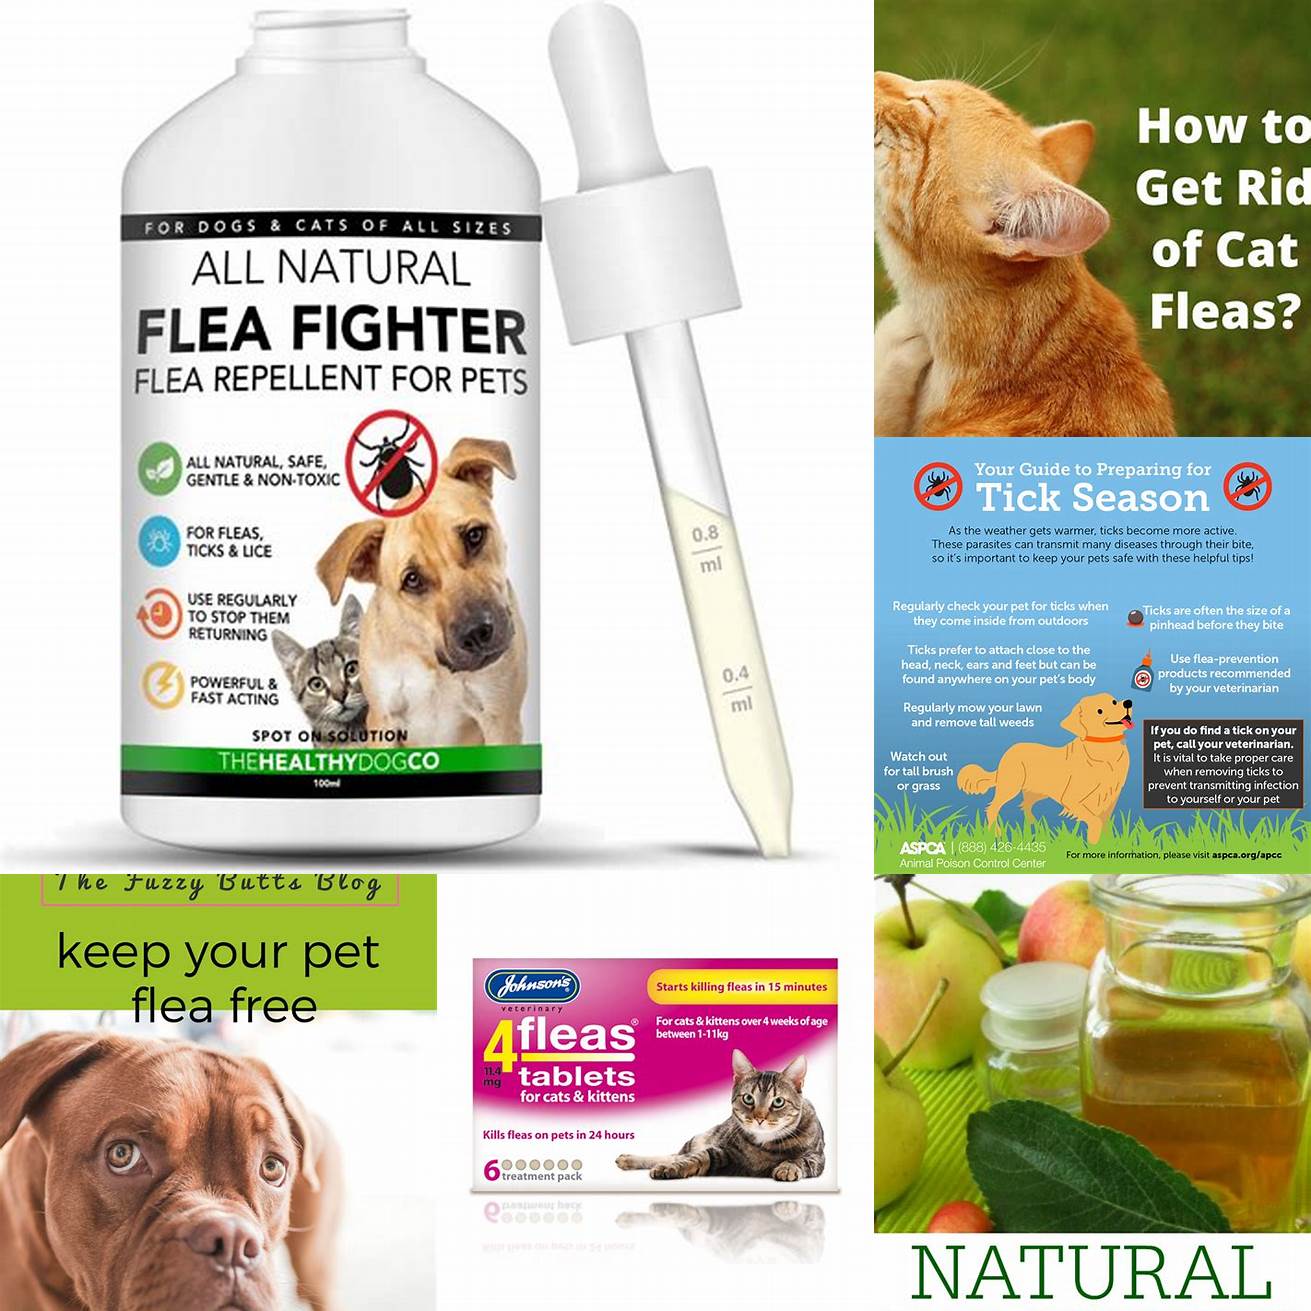 Keep your pets flea-free